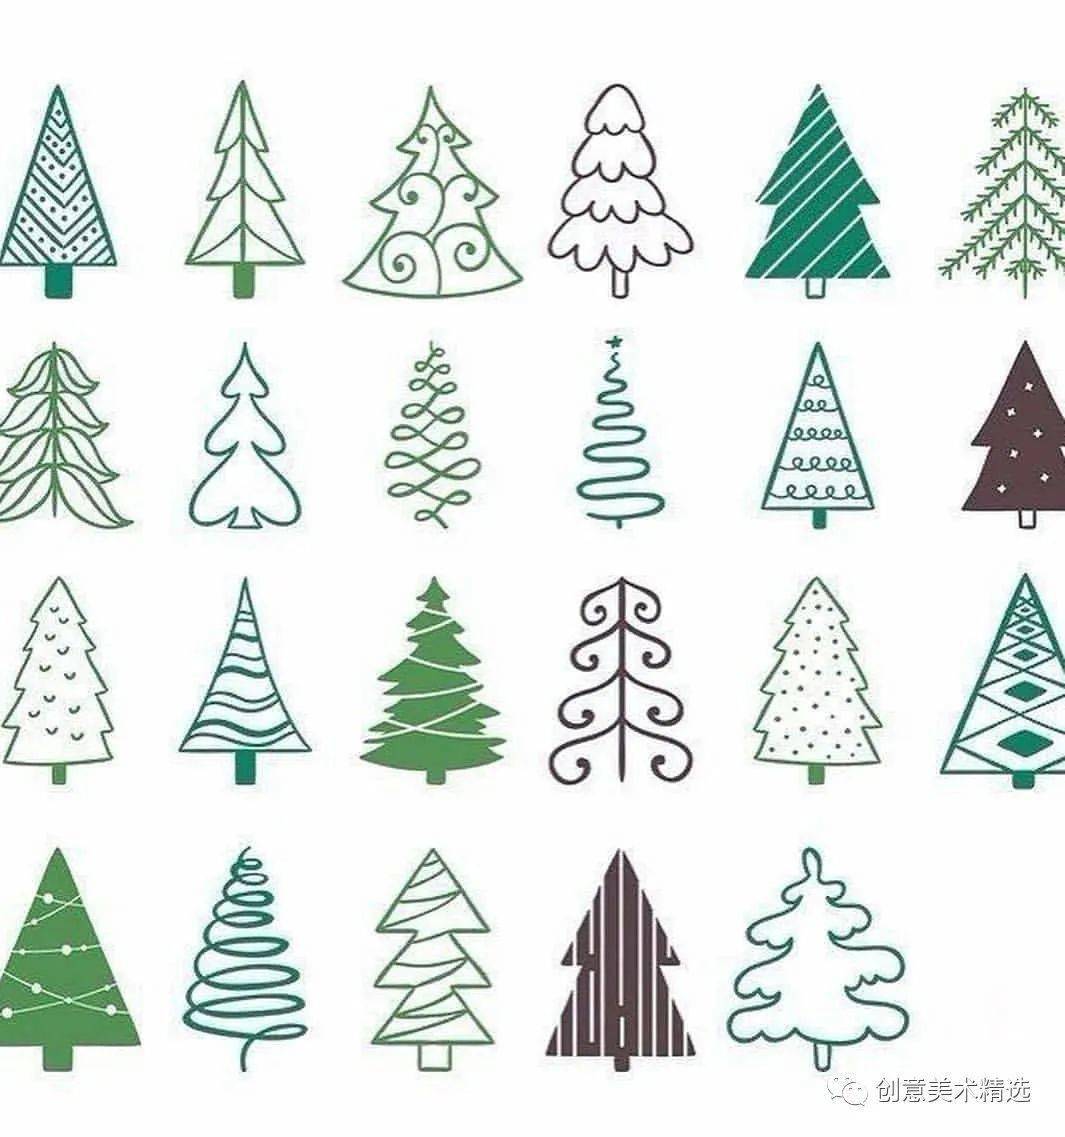 圣诞树怎么画——100个圣诞树简笔画,一学就会!